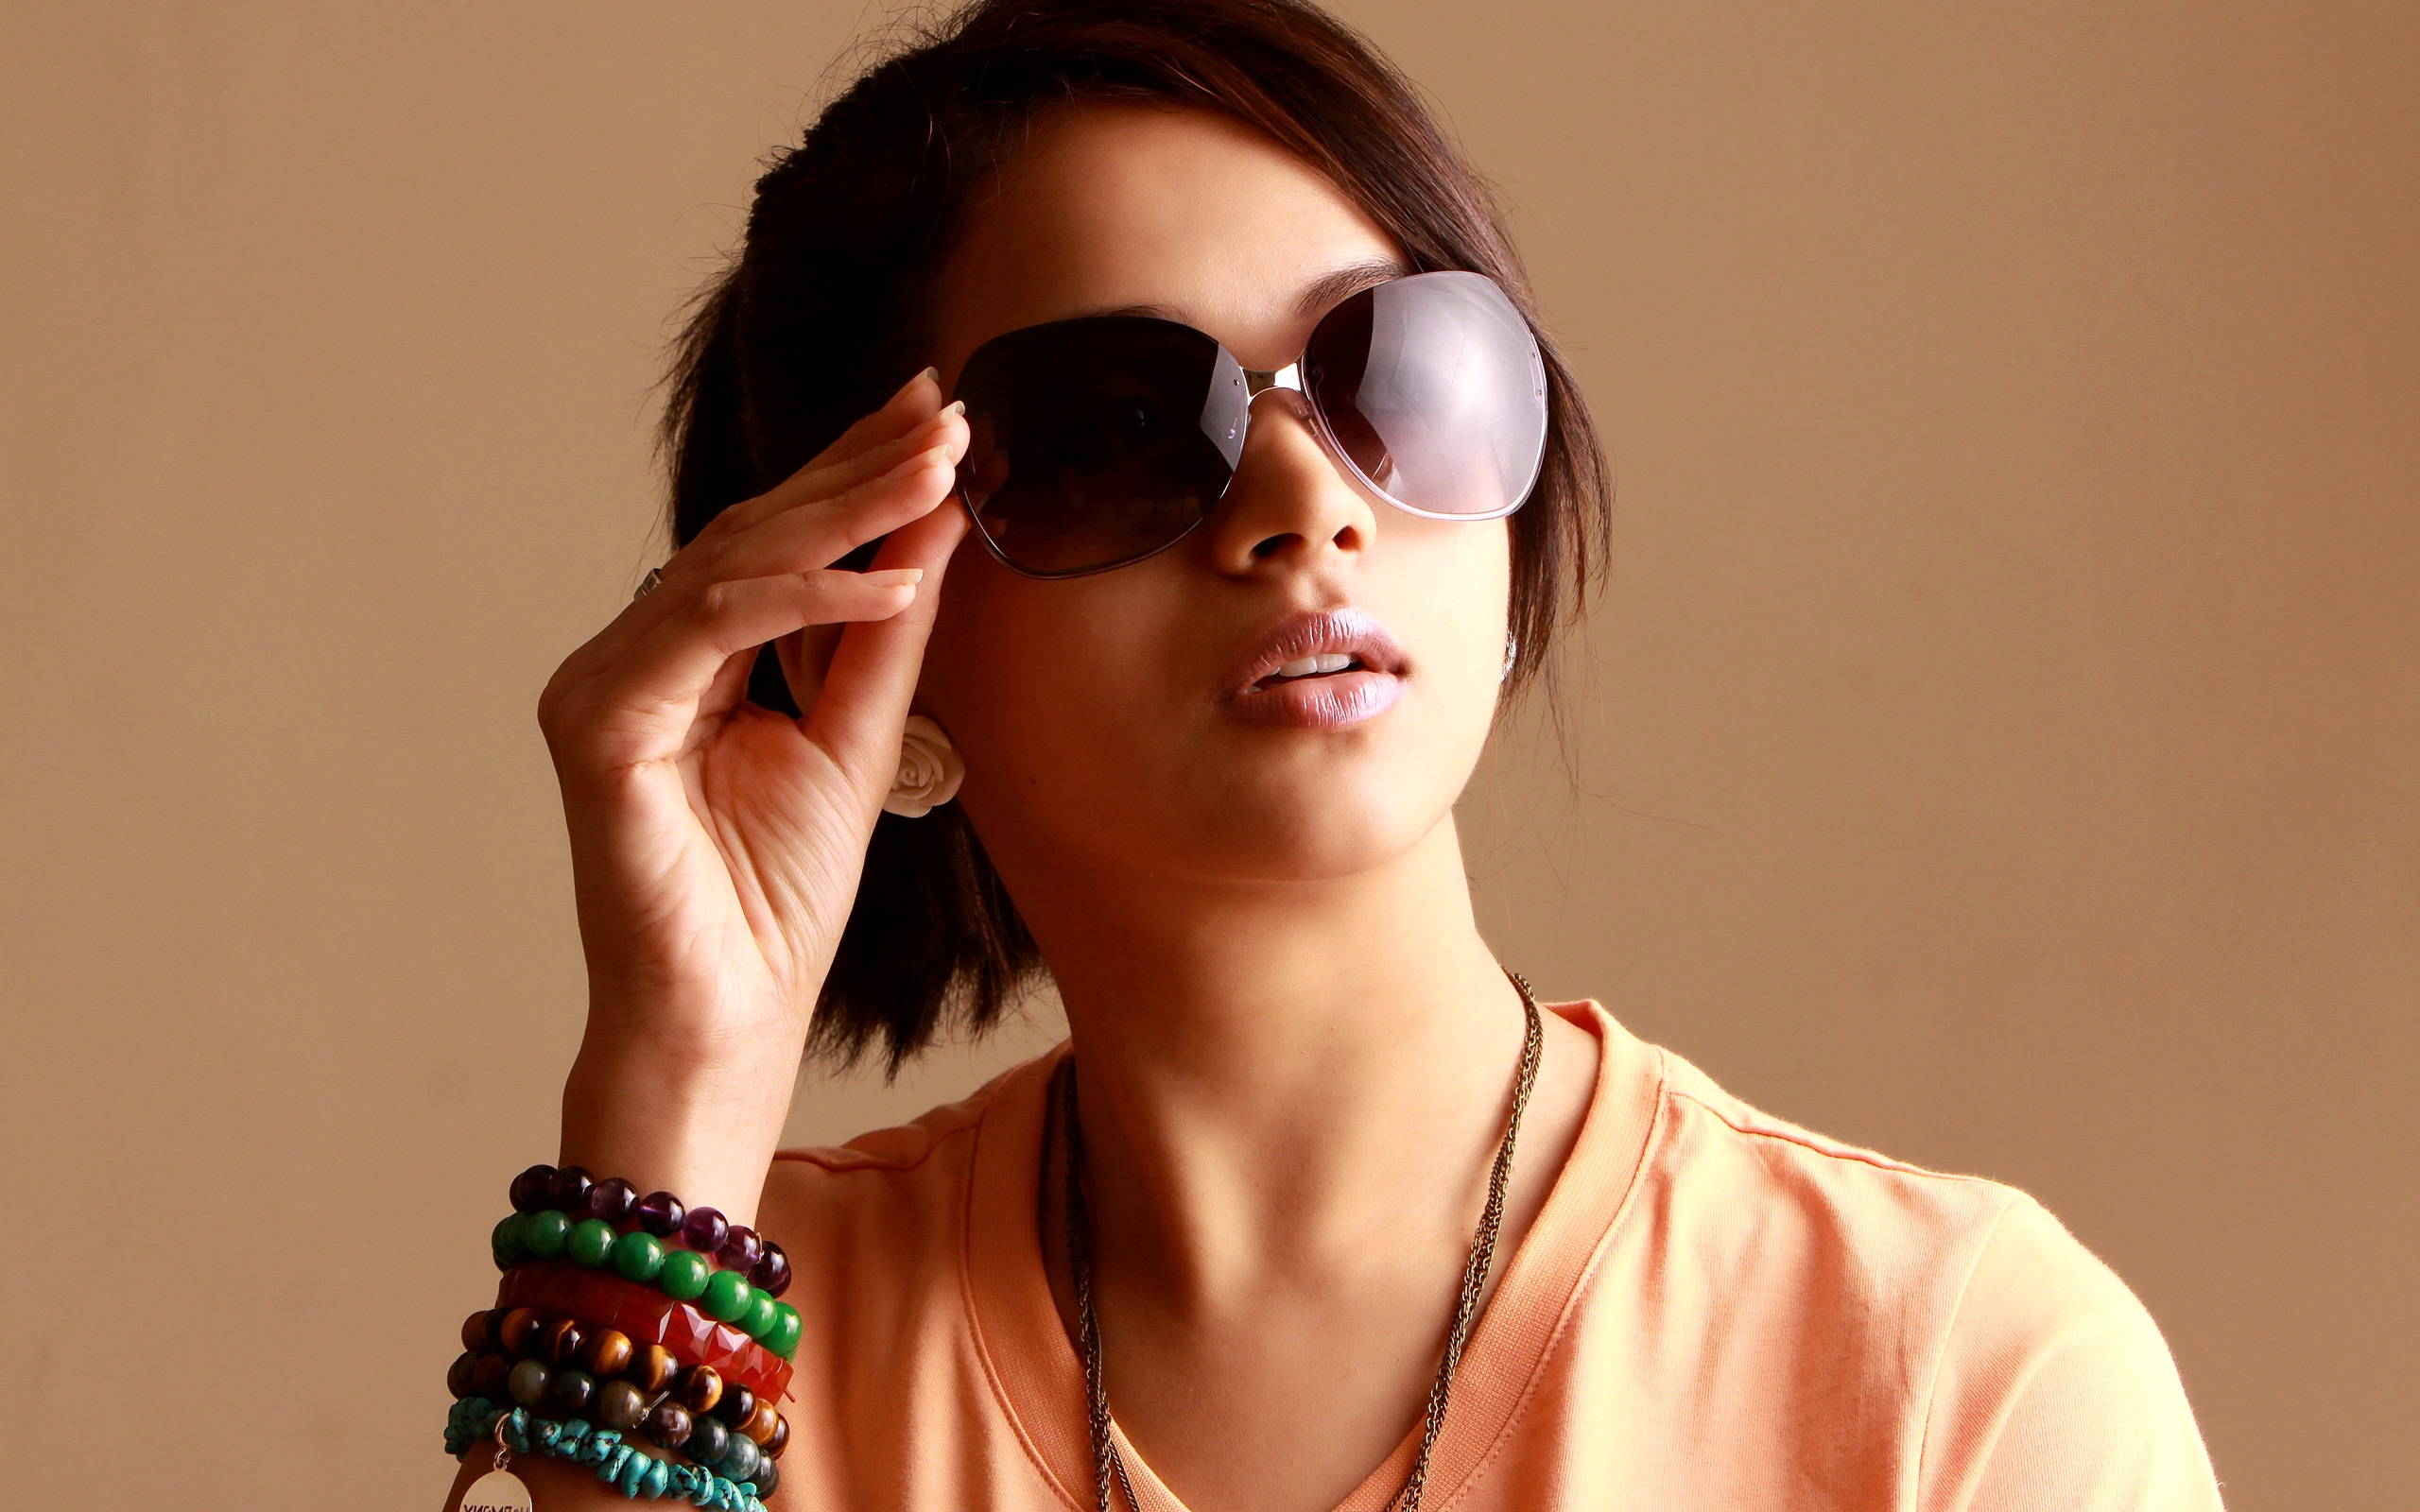 tamilische filme hd wallpaper 1080p,brillen,sonnenbrille,haar,brille,cool